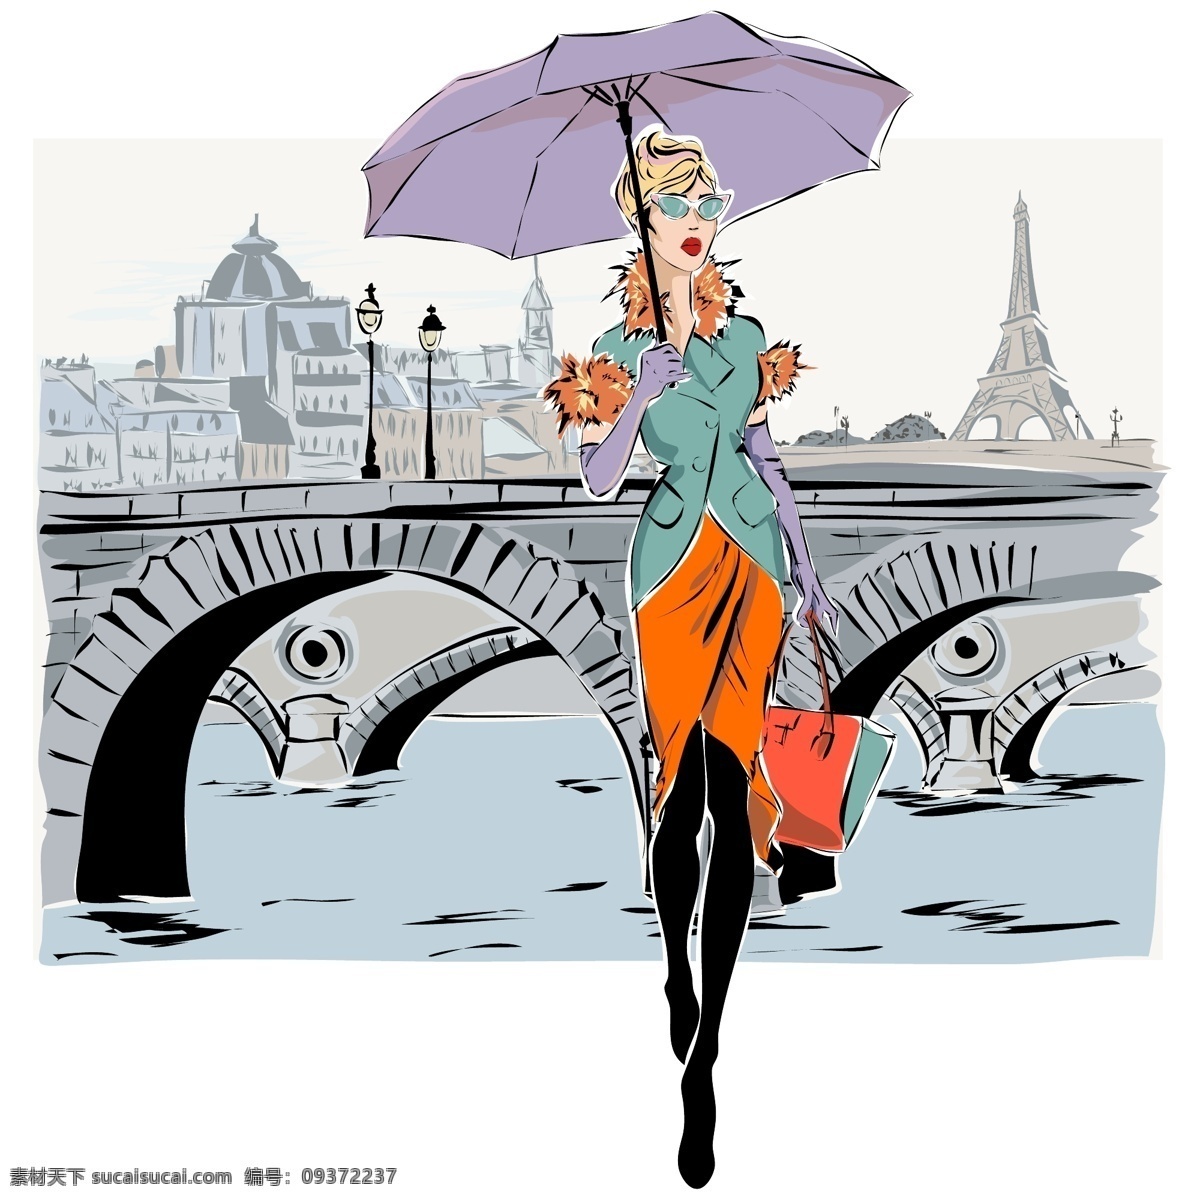 巴黎 旅游购物 美女 插画 巴黎风景 打伞的美女 时尚女性 卡通美女漫画 矢量美女插画 女性插图 卡通人物漫画 城市风景插画 女性女人 矢量人物 矢量素材